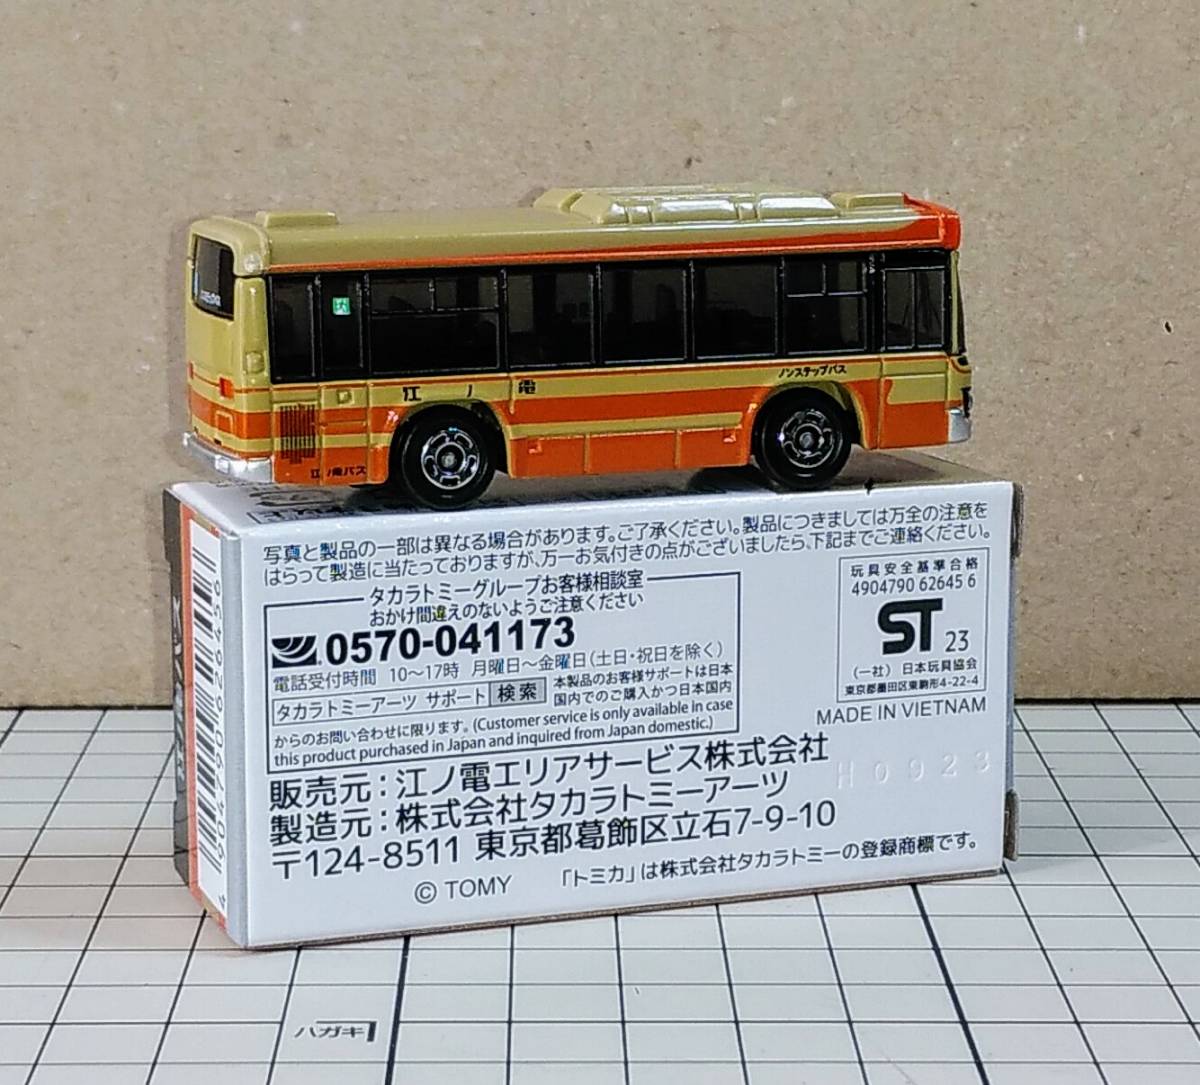 江ノ電バス【路線バス (いすゞエルガ)】オリジナルトミカ_みほん